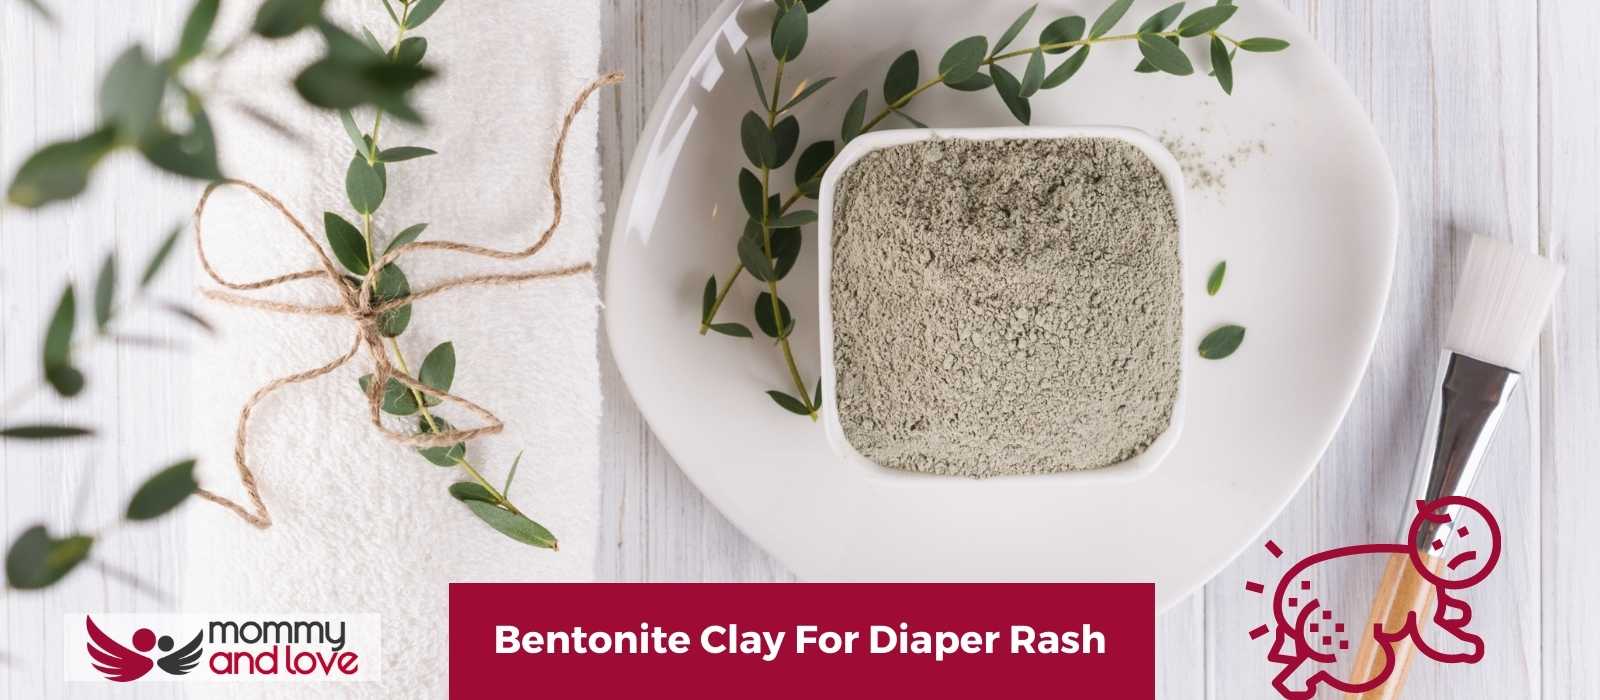 Bentonite Clay For Diaper Rash